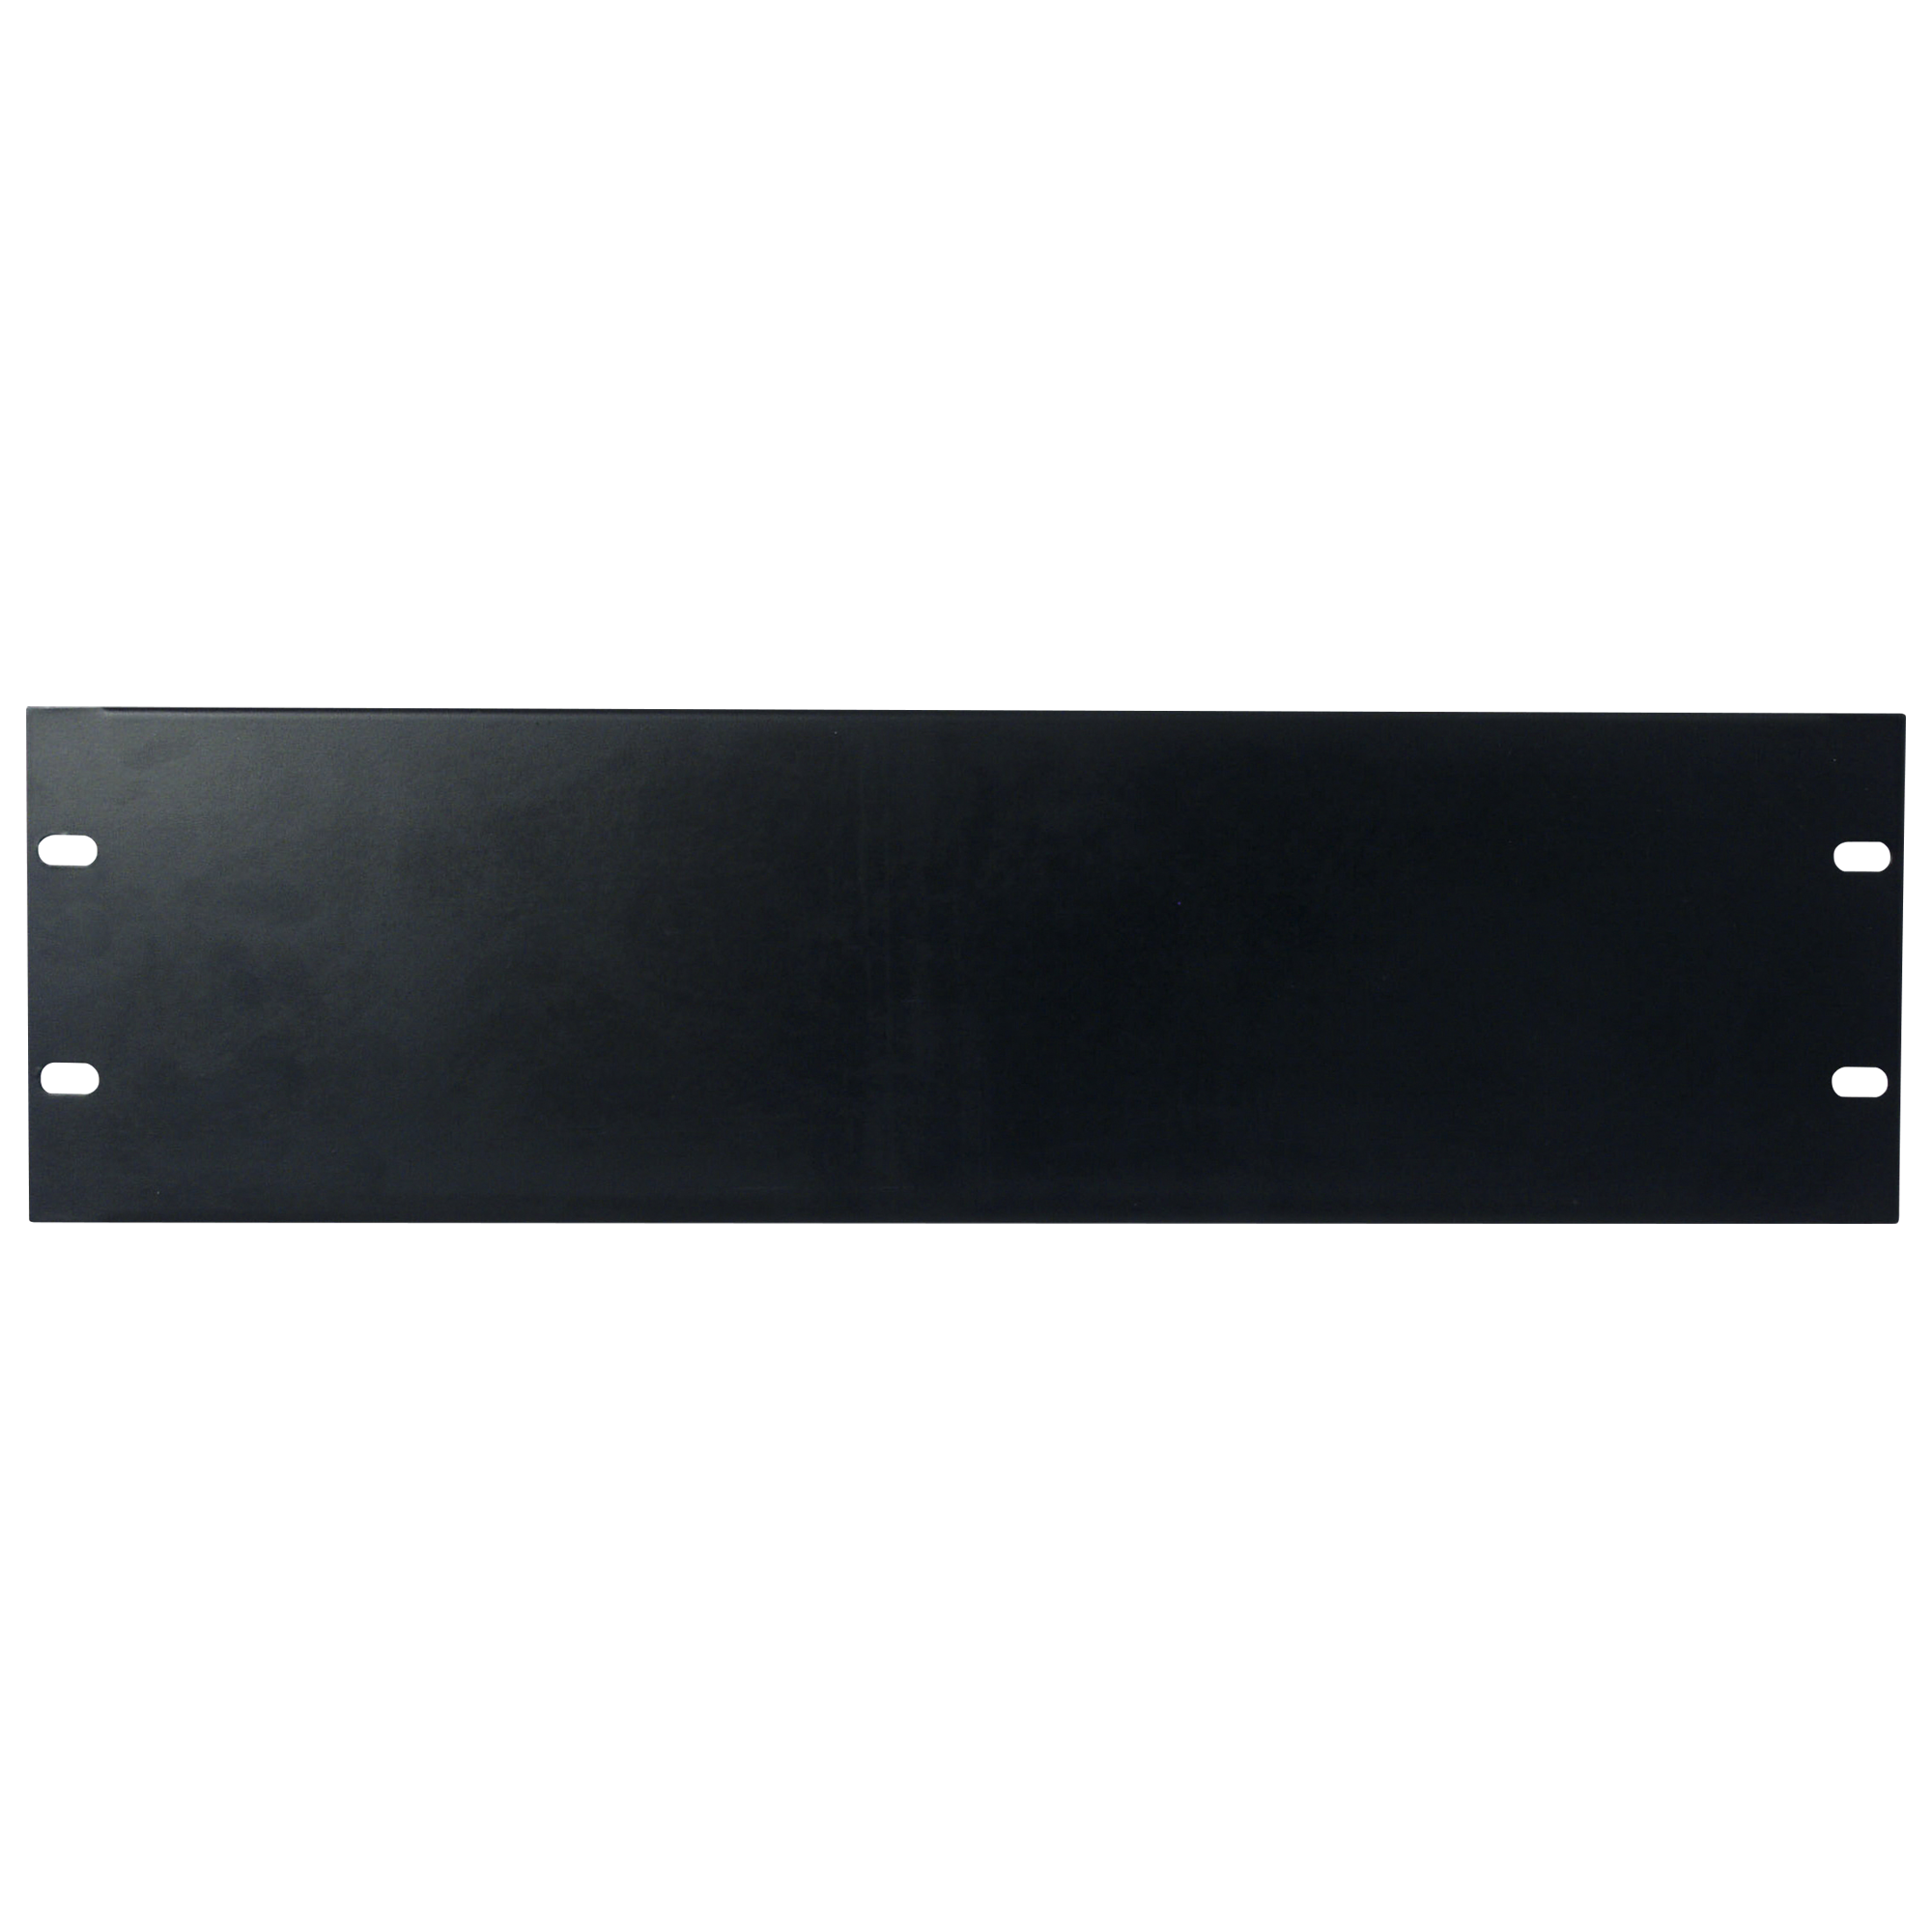 Showgear 19 inch Blind Panel Black 3HE